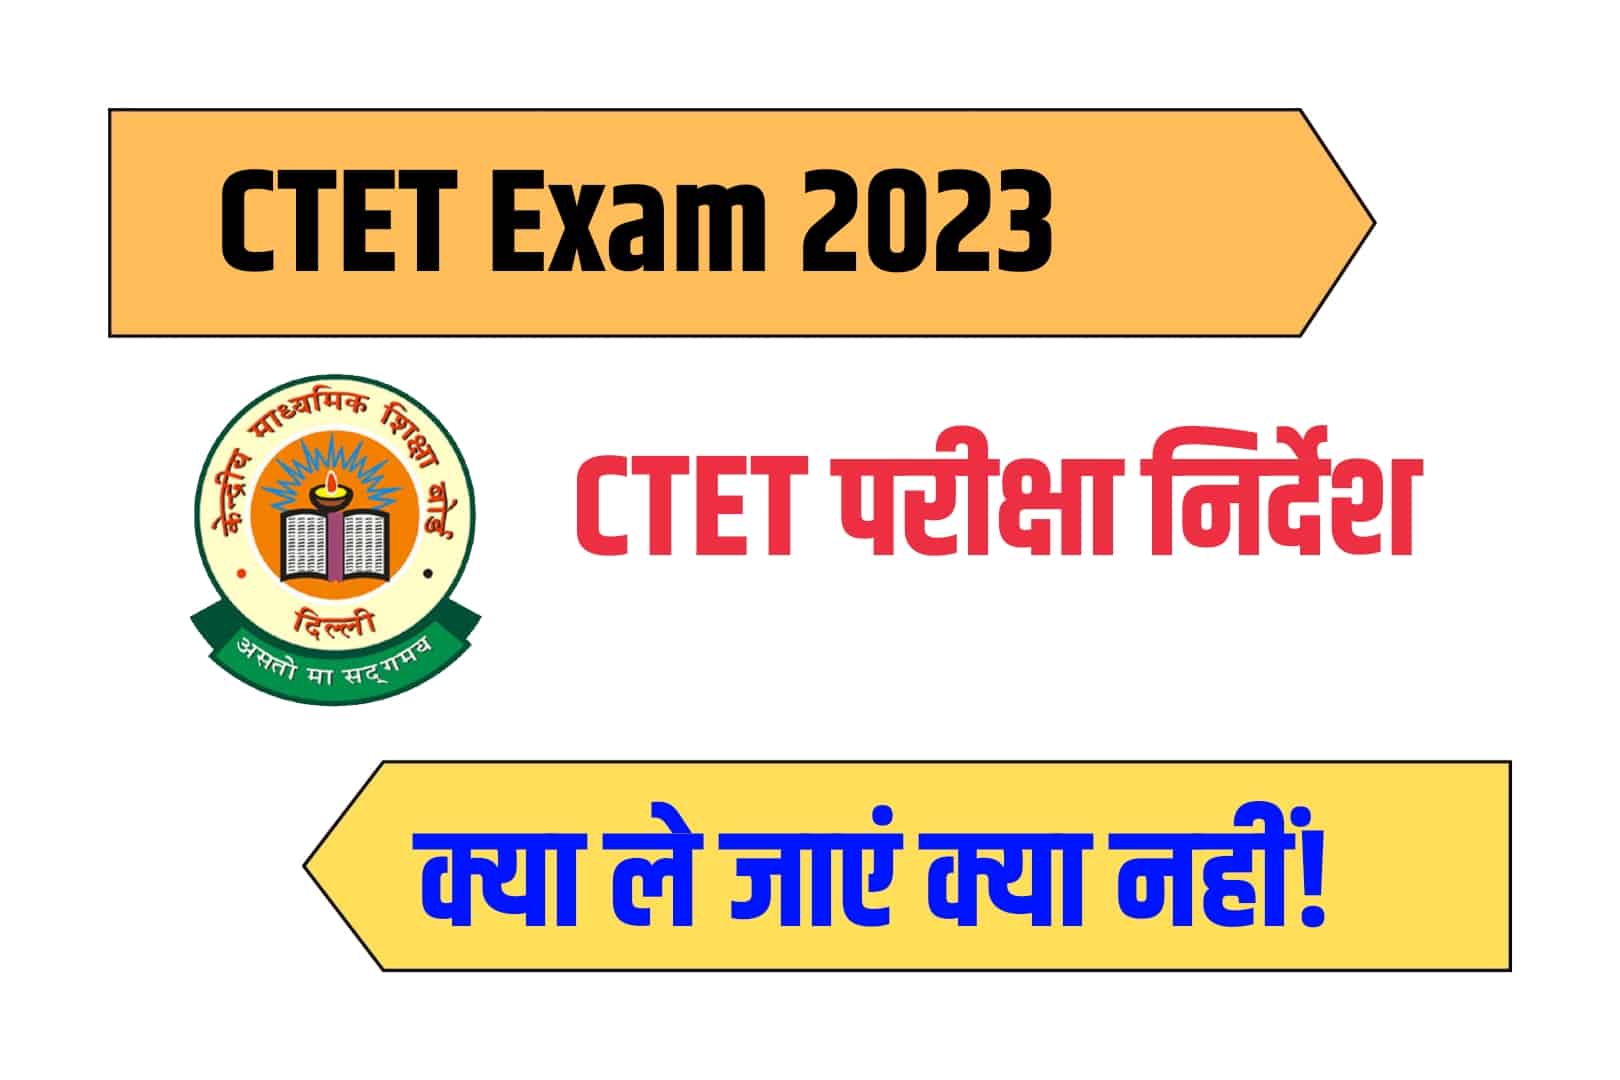 CTET Exam Instructions 2023 : CTET परीक्षा हॉल में फॉलो करने होंगे ये सख्त निर्देश